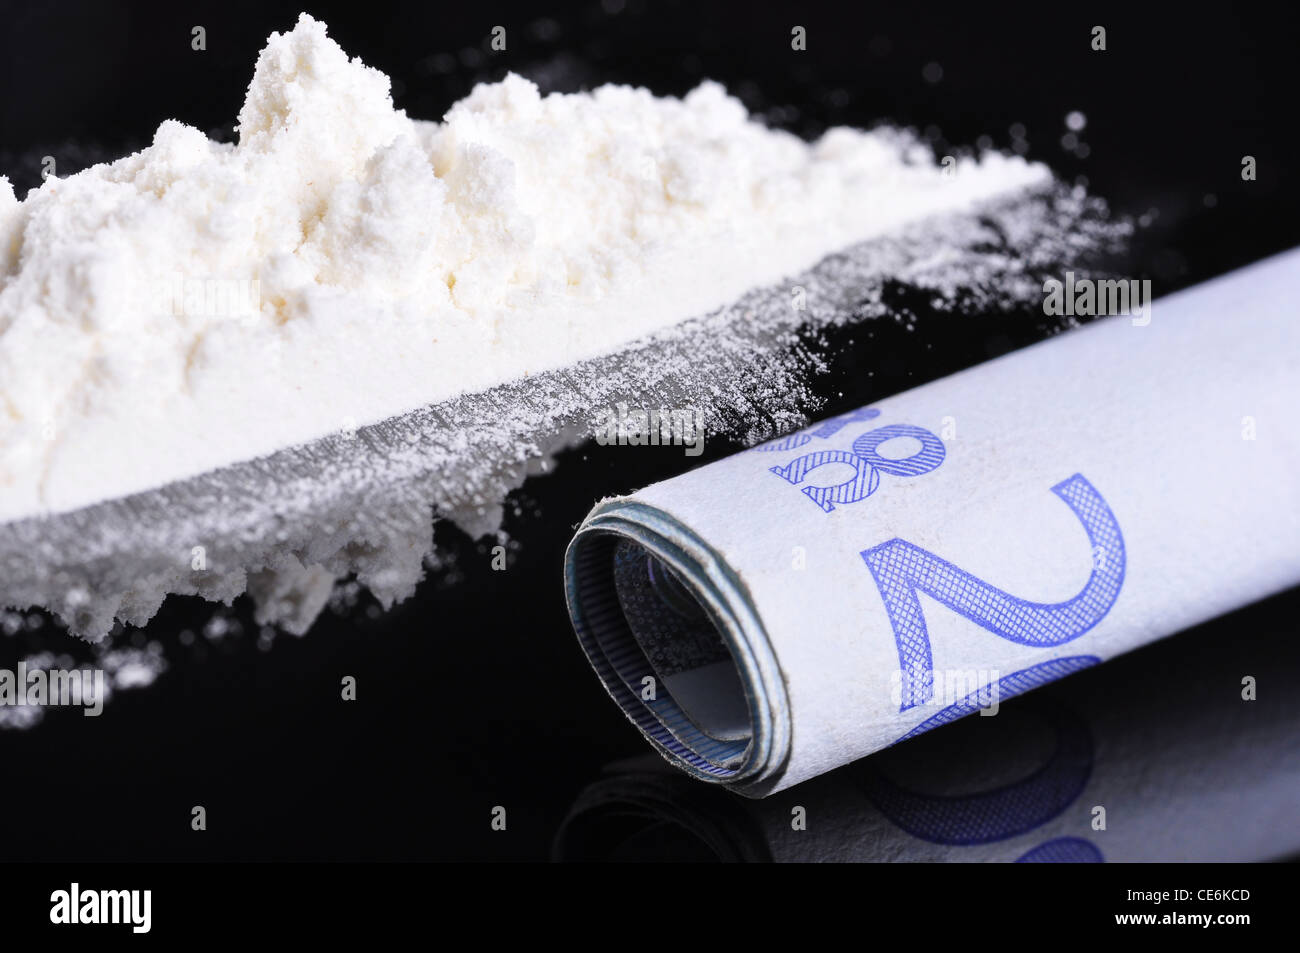 Eine Banknote neben einer Reihe von Kokain geschnupft werden gerne Stockfoto